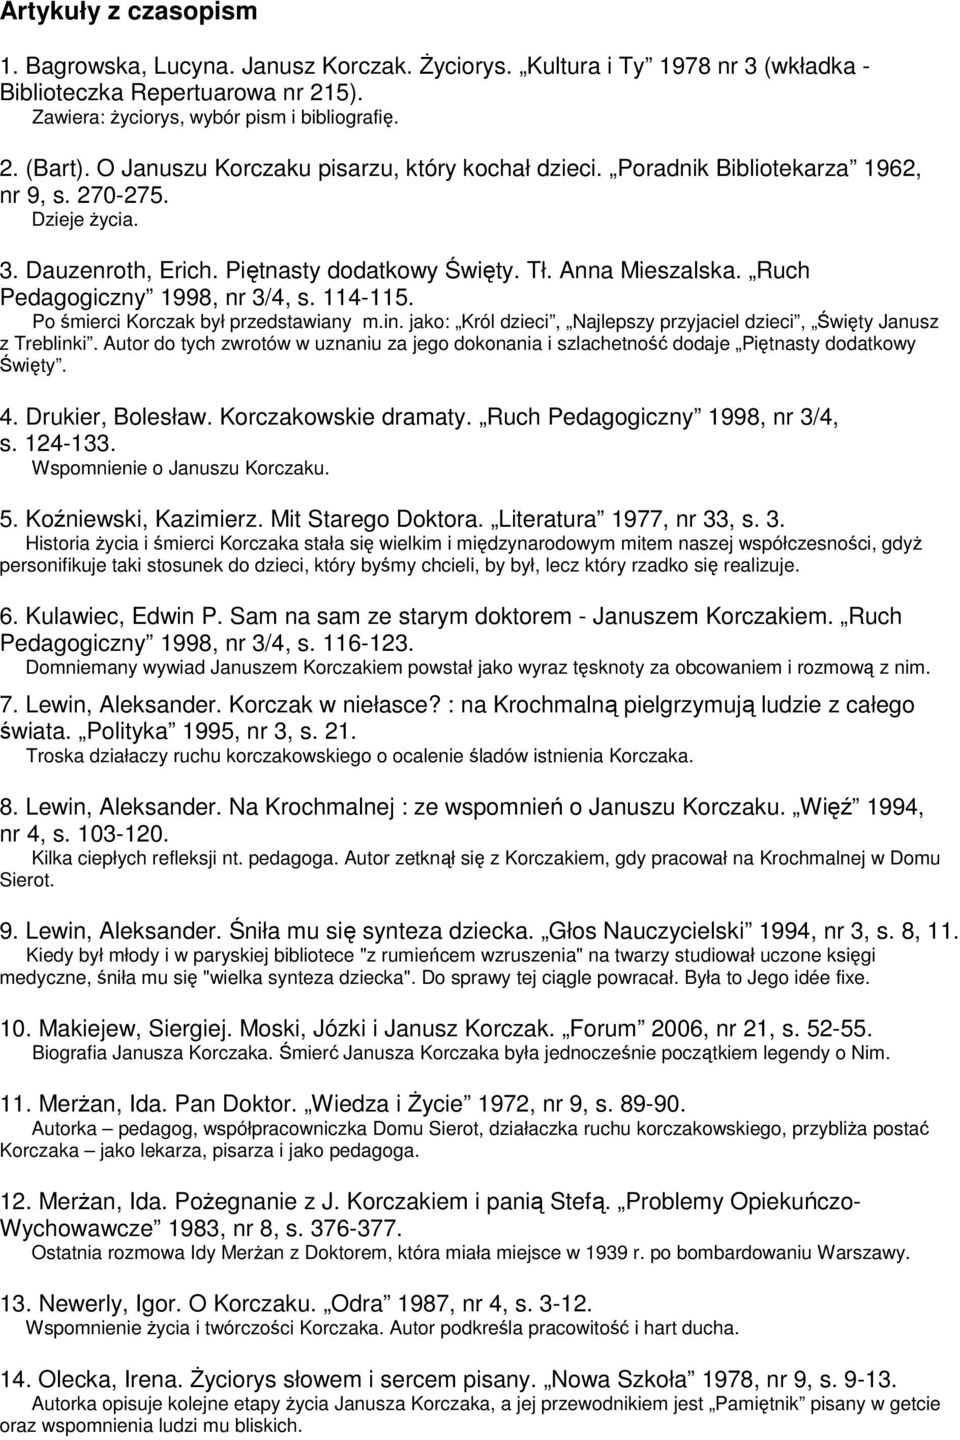 Ruch Pedagogiczny 1998, nr 3/4, s. 114-115. Po śmierci Korczak był przedstawiany m.in. jako: Król dzieci, Najlepszy przyjaciel dzieci, Święty Janusz z Treblinki.